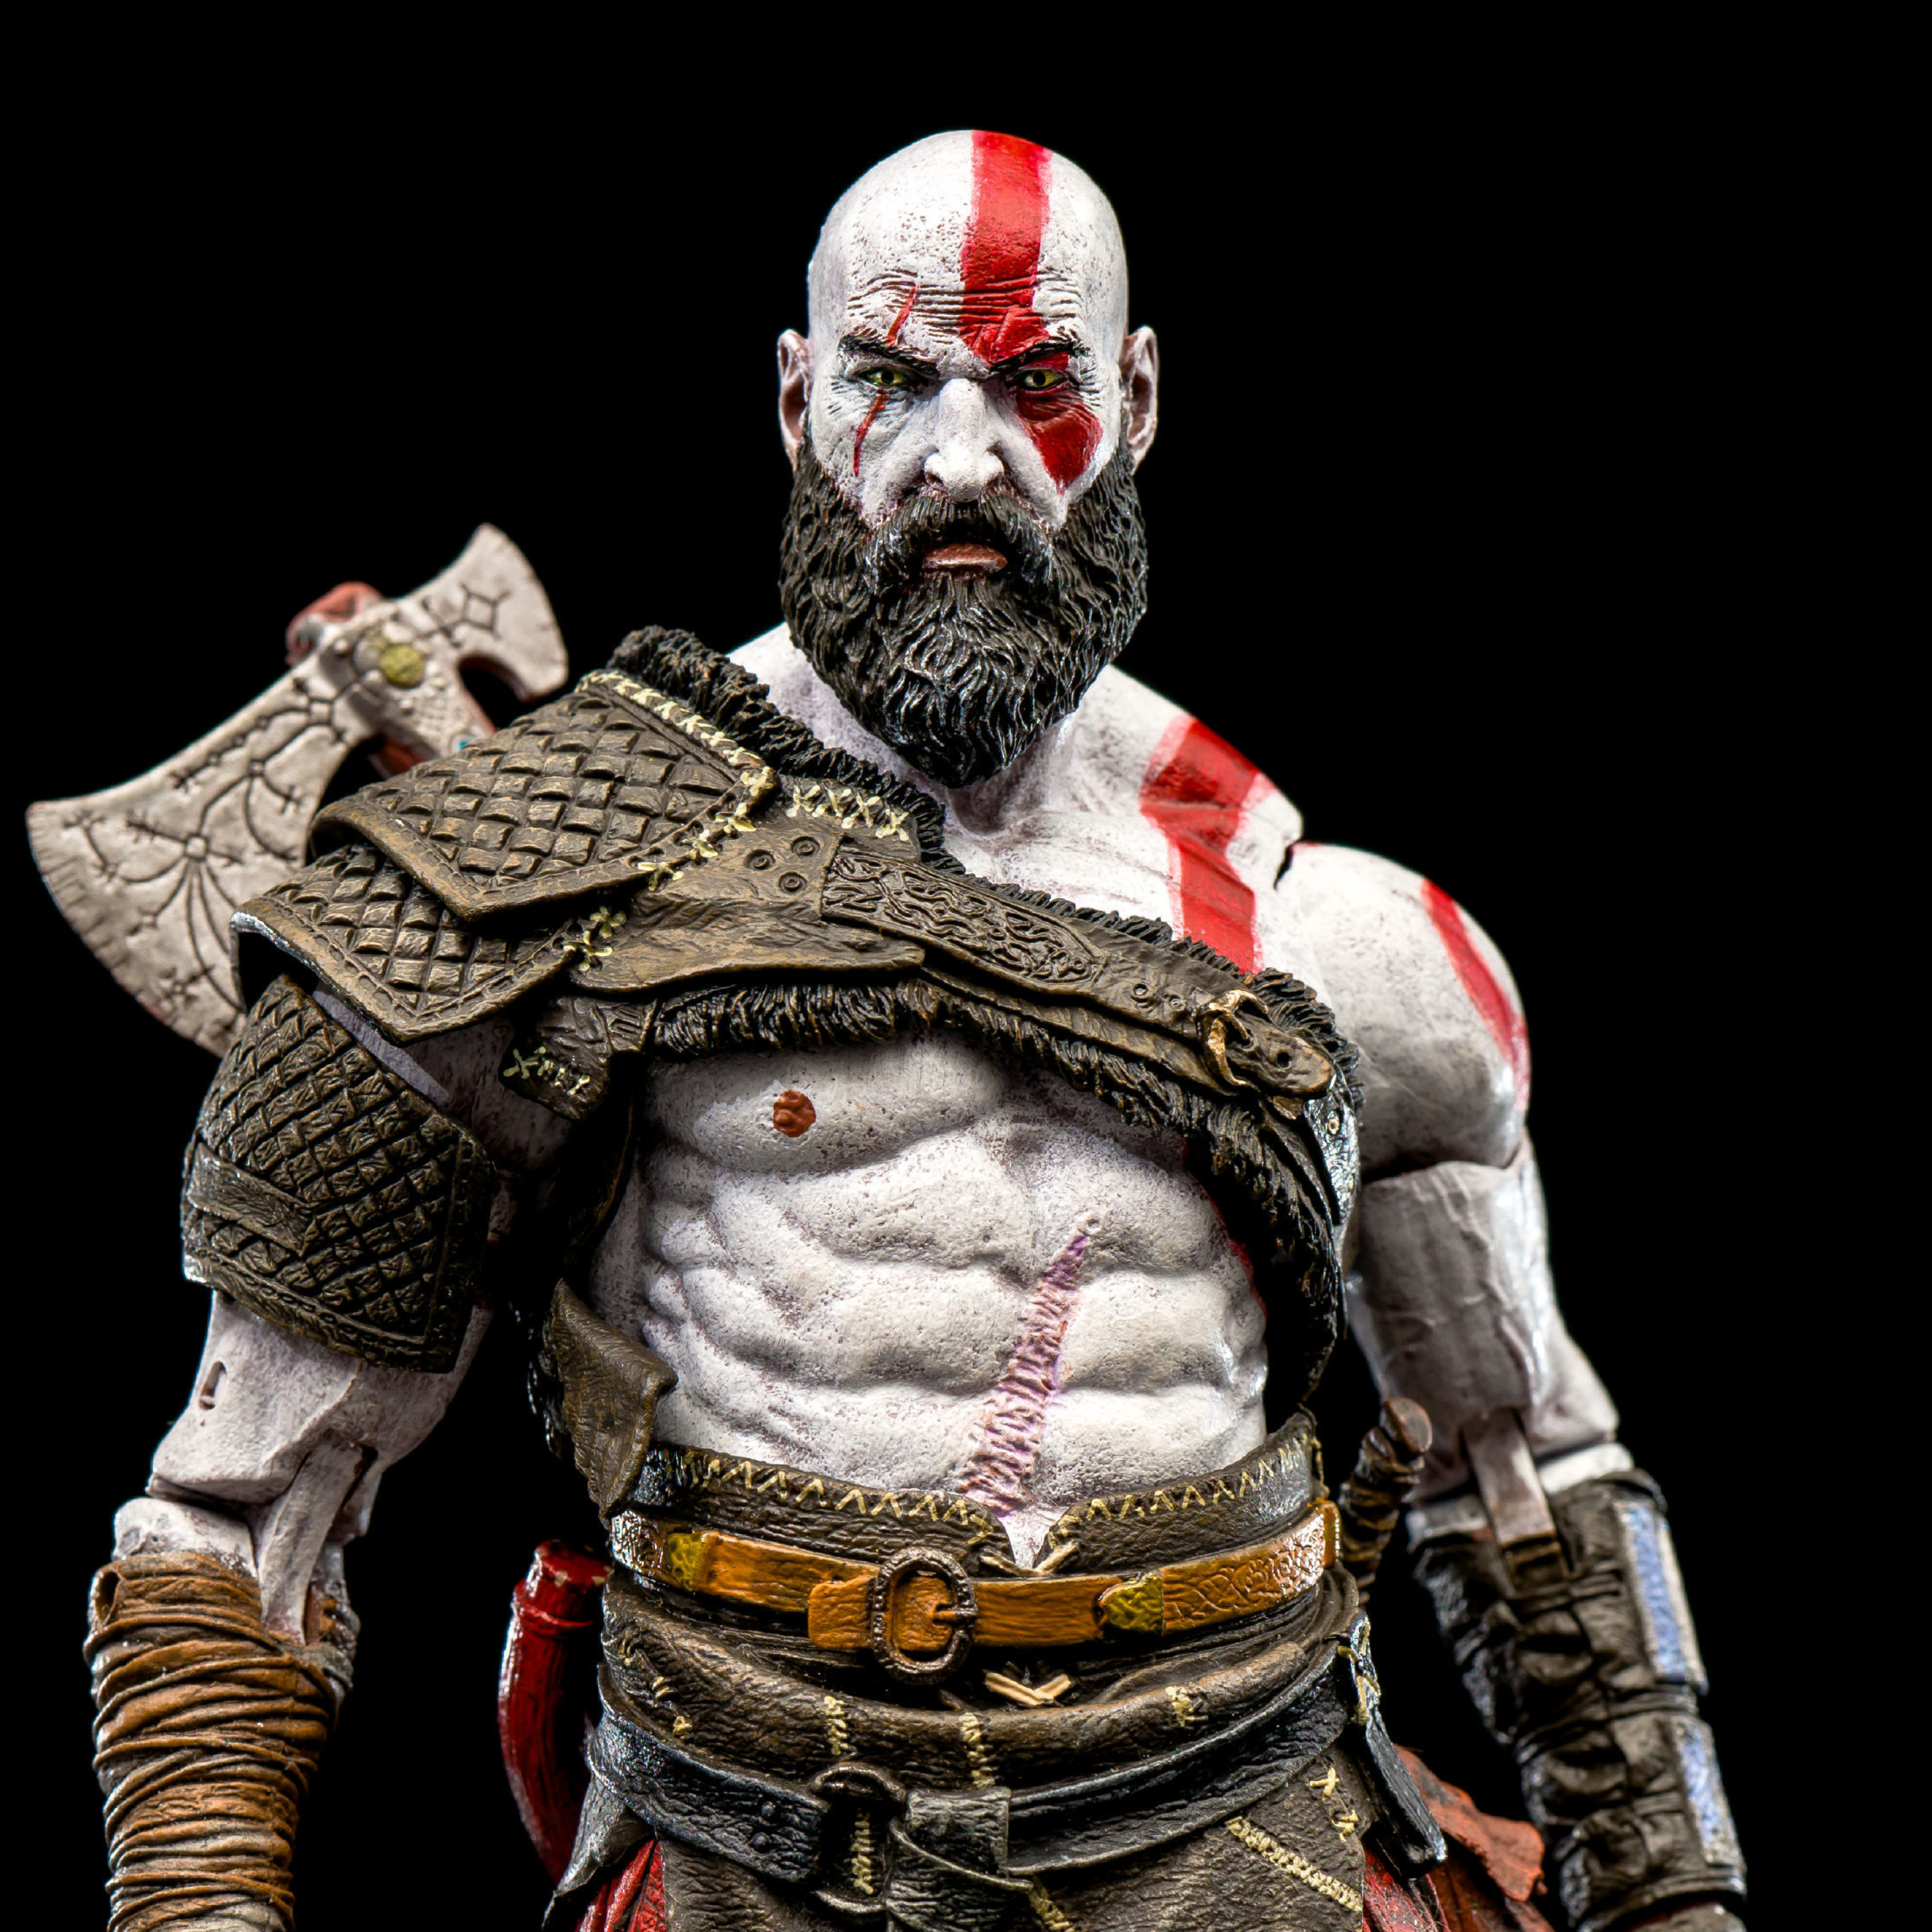 kratos god of war 3 download free